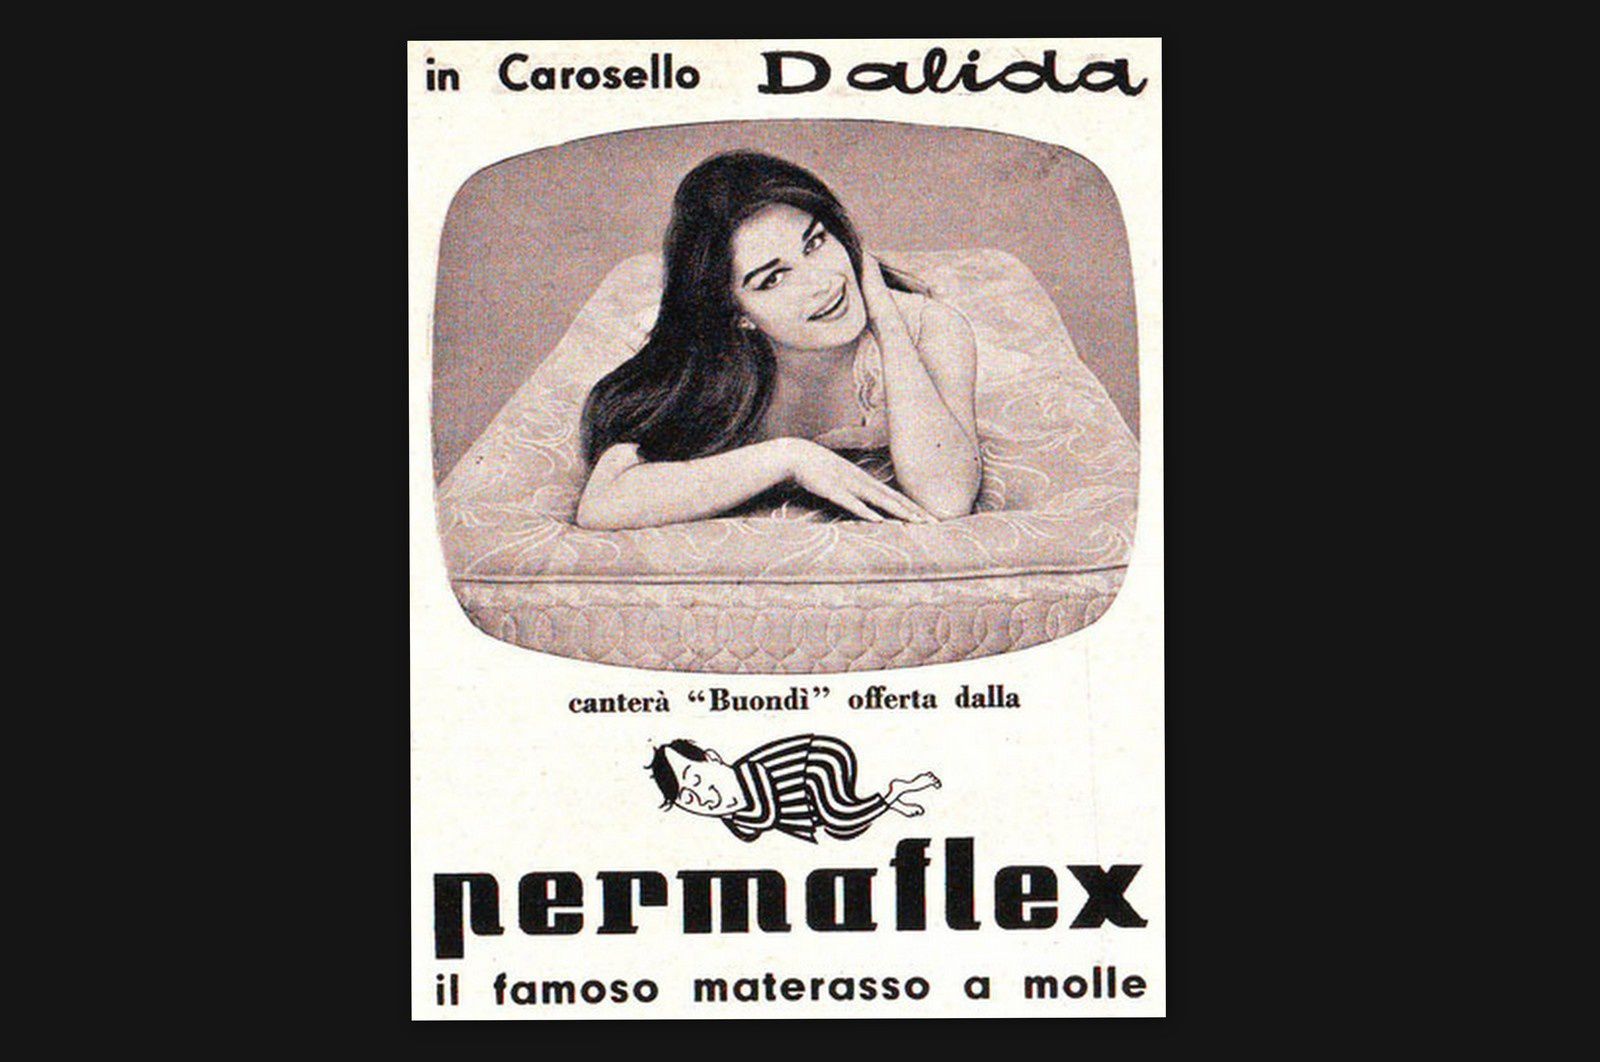 La publicité concernant le spot réalisé avec la chanson "Buondi", que Dalida chante en français sous le titre "Je pars".